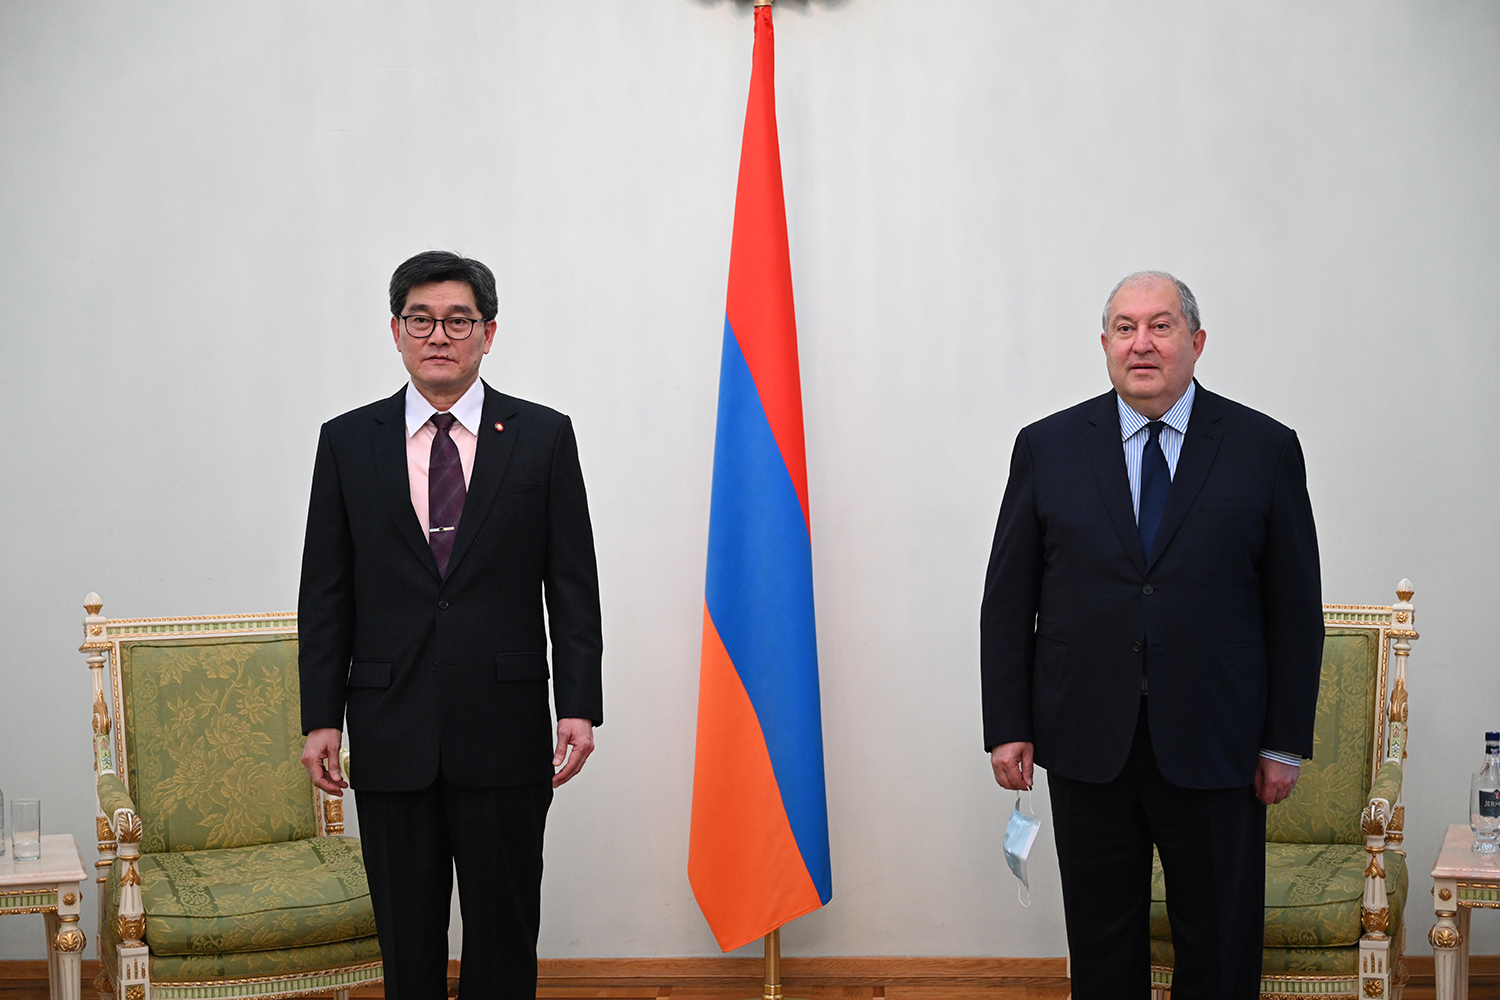 Таиланд заинтересован в углублении отношений с Арменией - посол